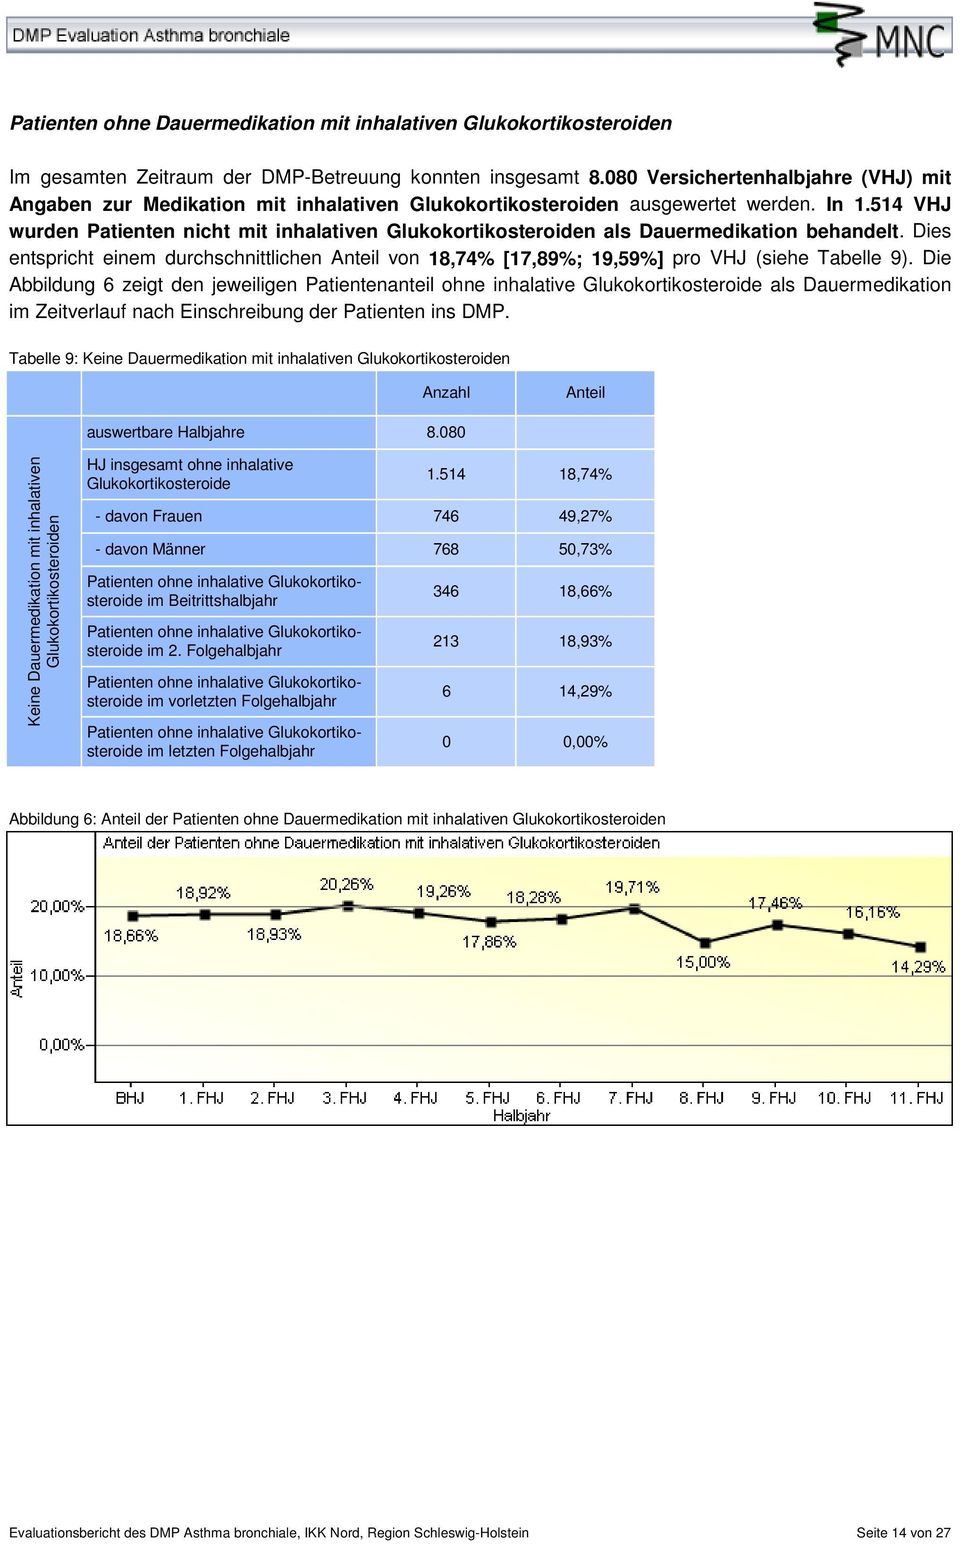 514 VHJ wurden Patienten nicht mit inhalativen Glukokortikosteroiden als Dauermedikation behandelt. Dies entspricht einem durchschnittlichen von 18,74% [17,89%; 19,59%] pro VHJ (siehe Tabelle 9).